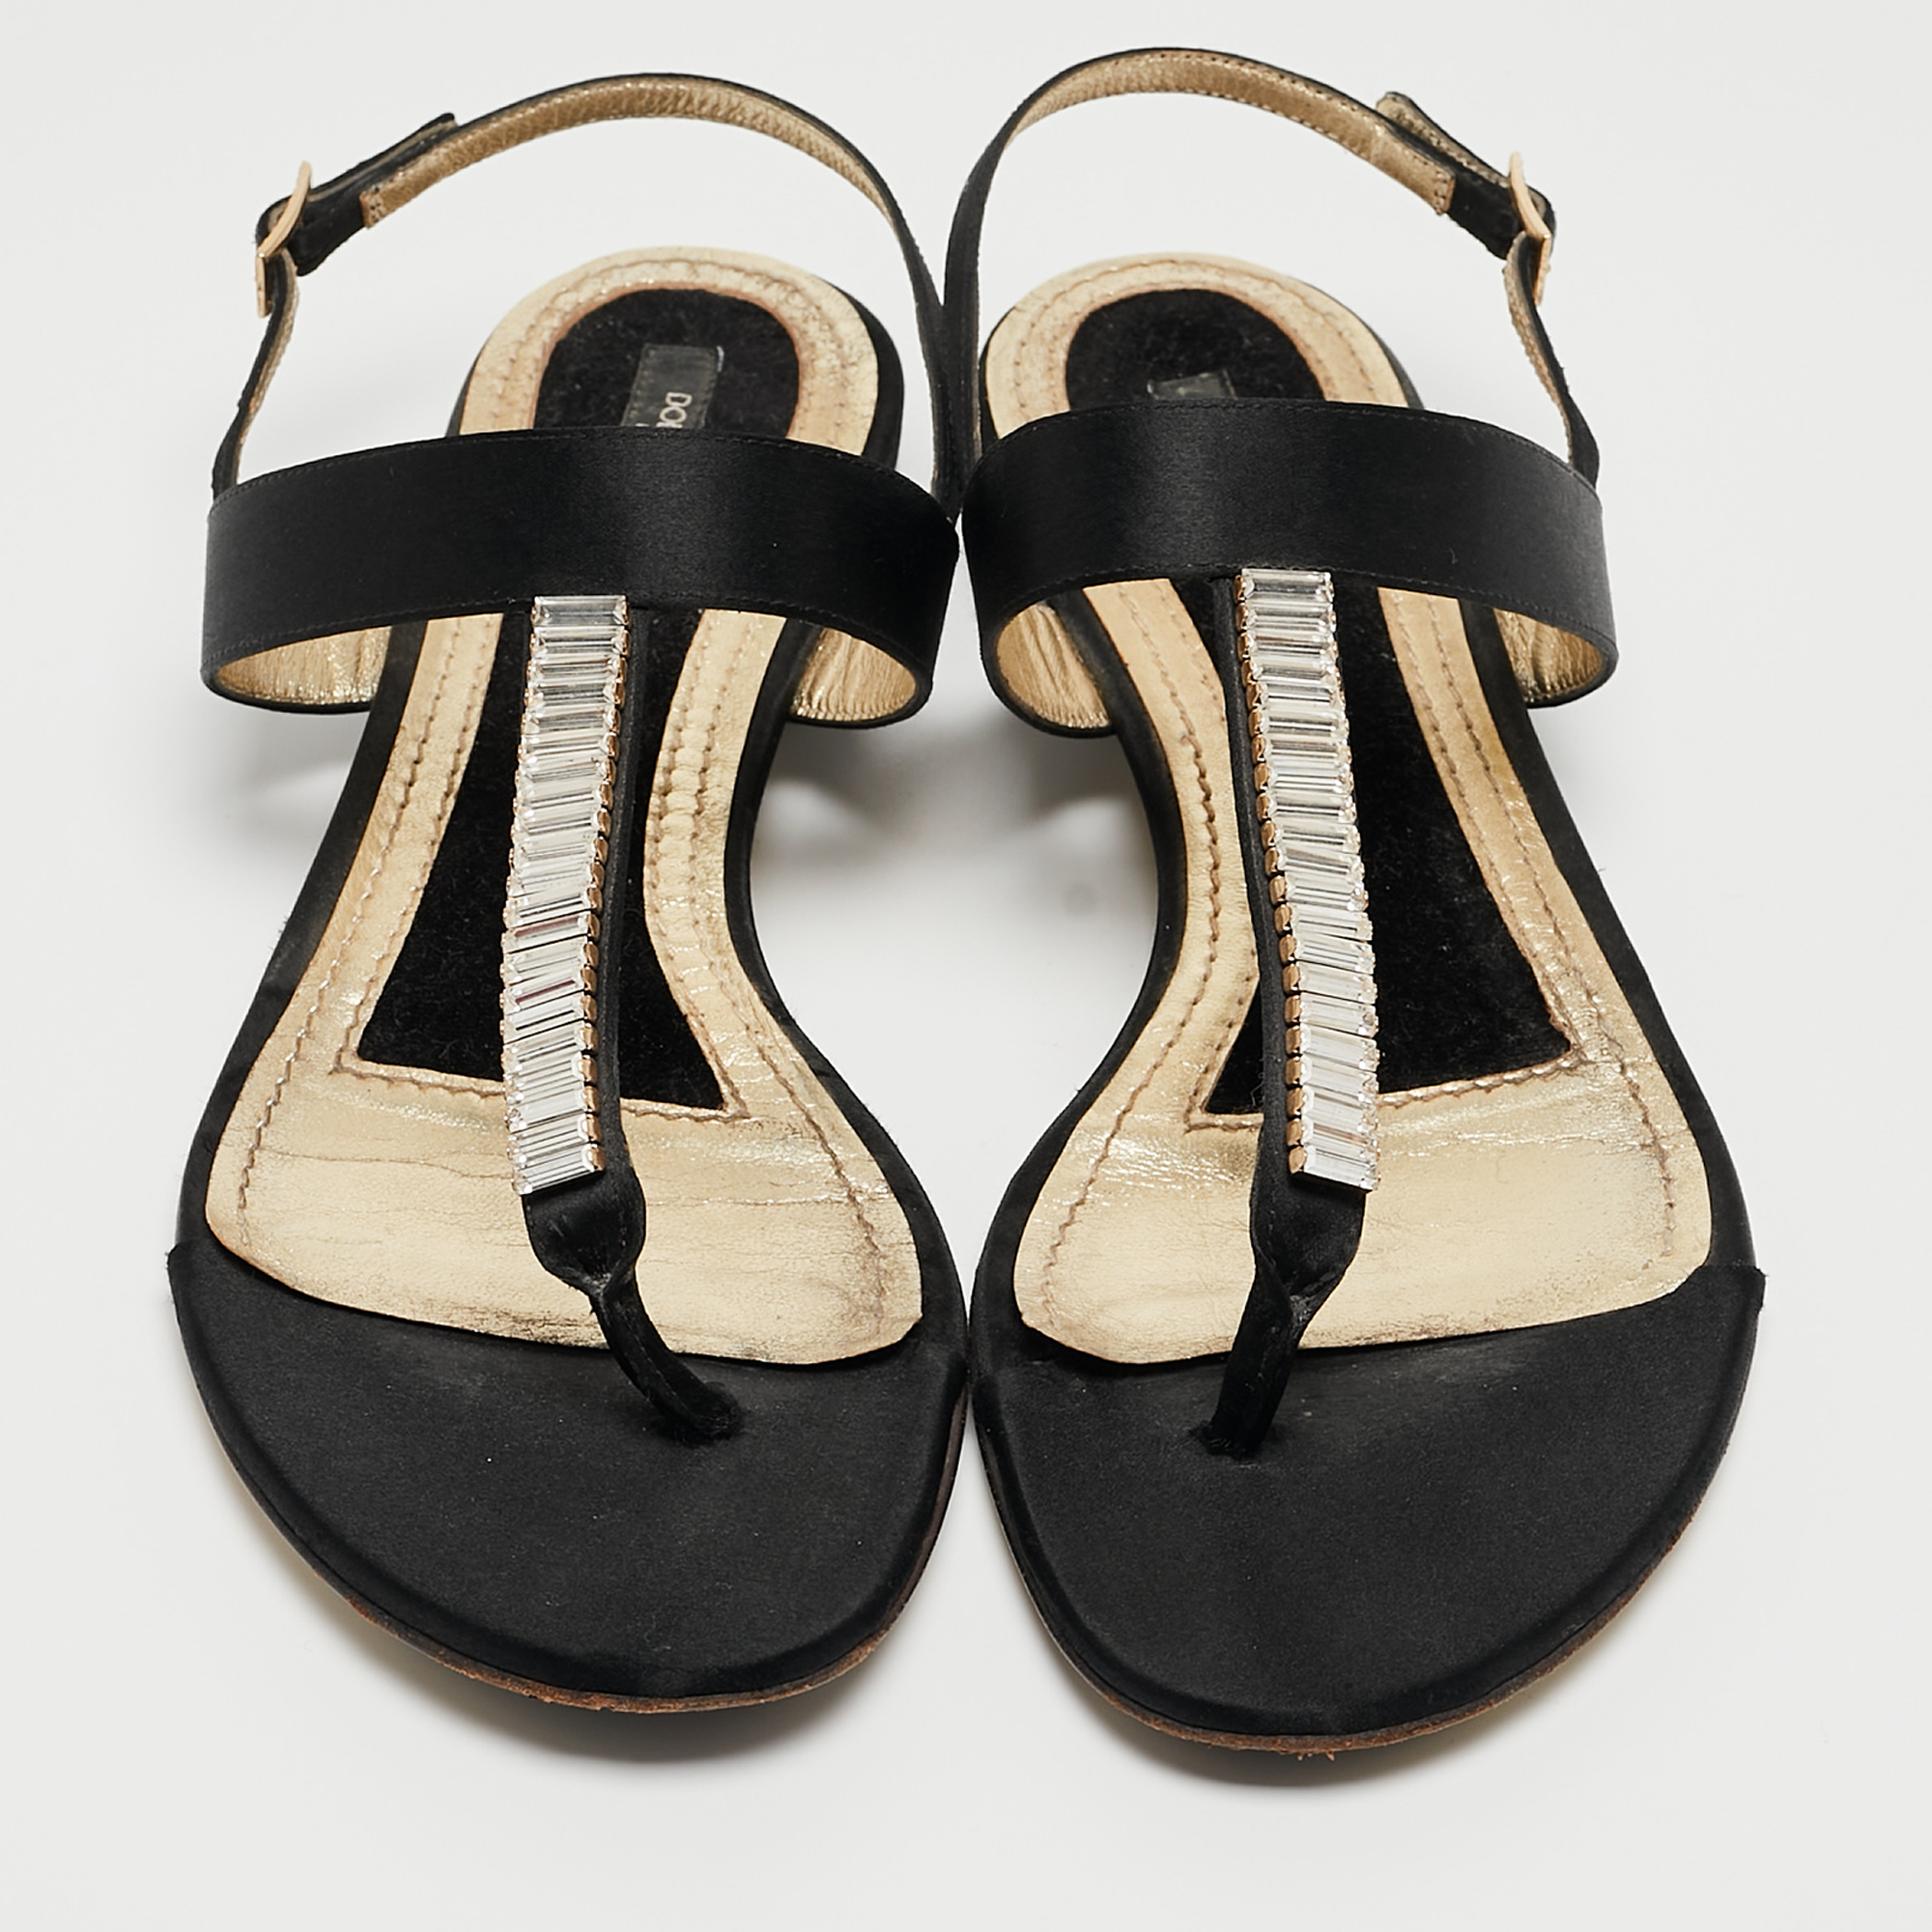 Dolce & Gabbana Black Satin Crystal Embellished Thong Flat Sandals Size 37.5